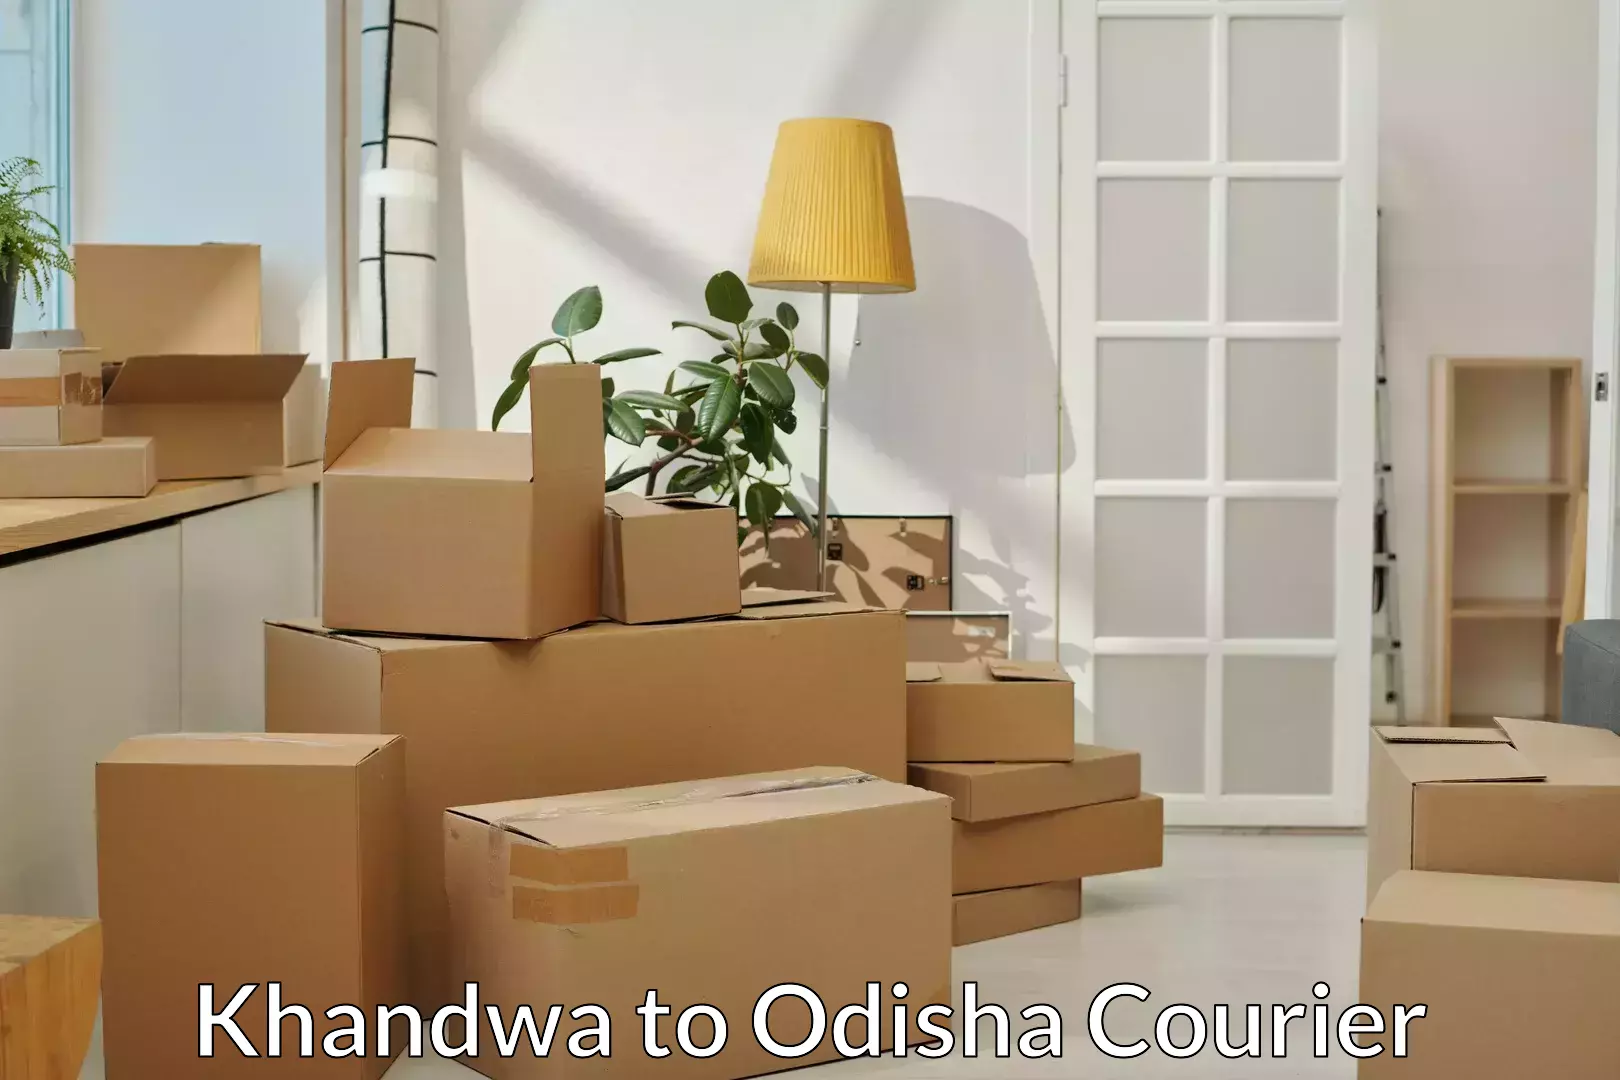 Professional moving company Khandwa to Tihidi